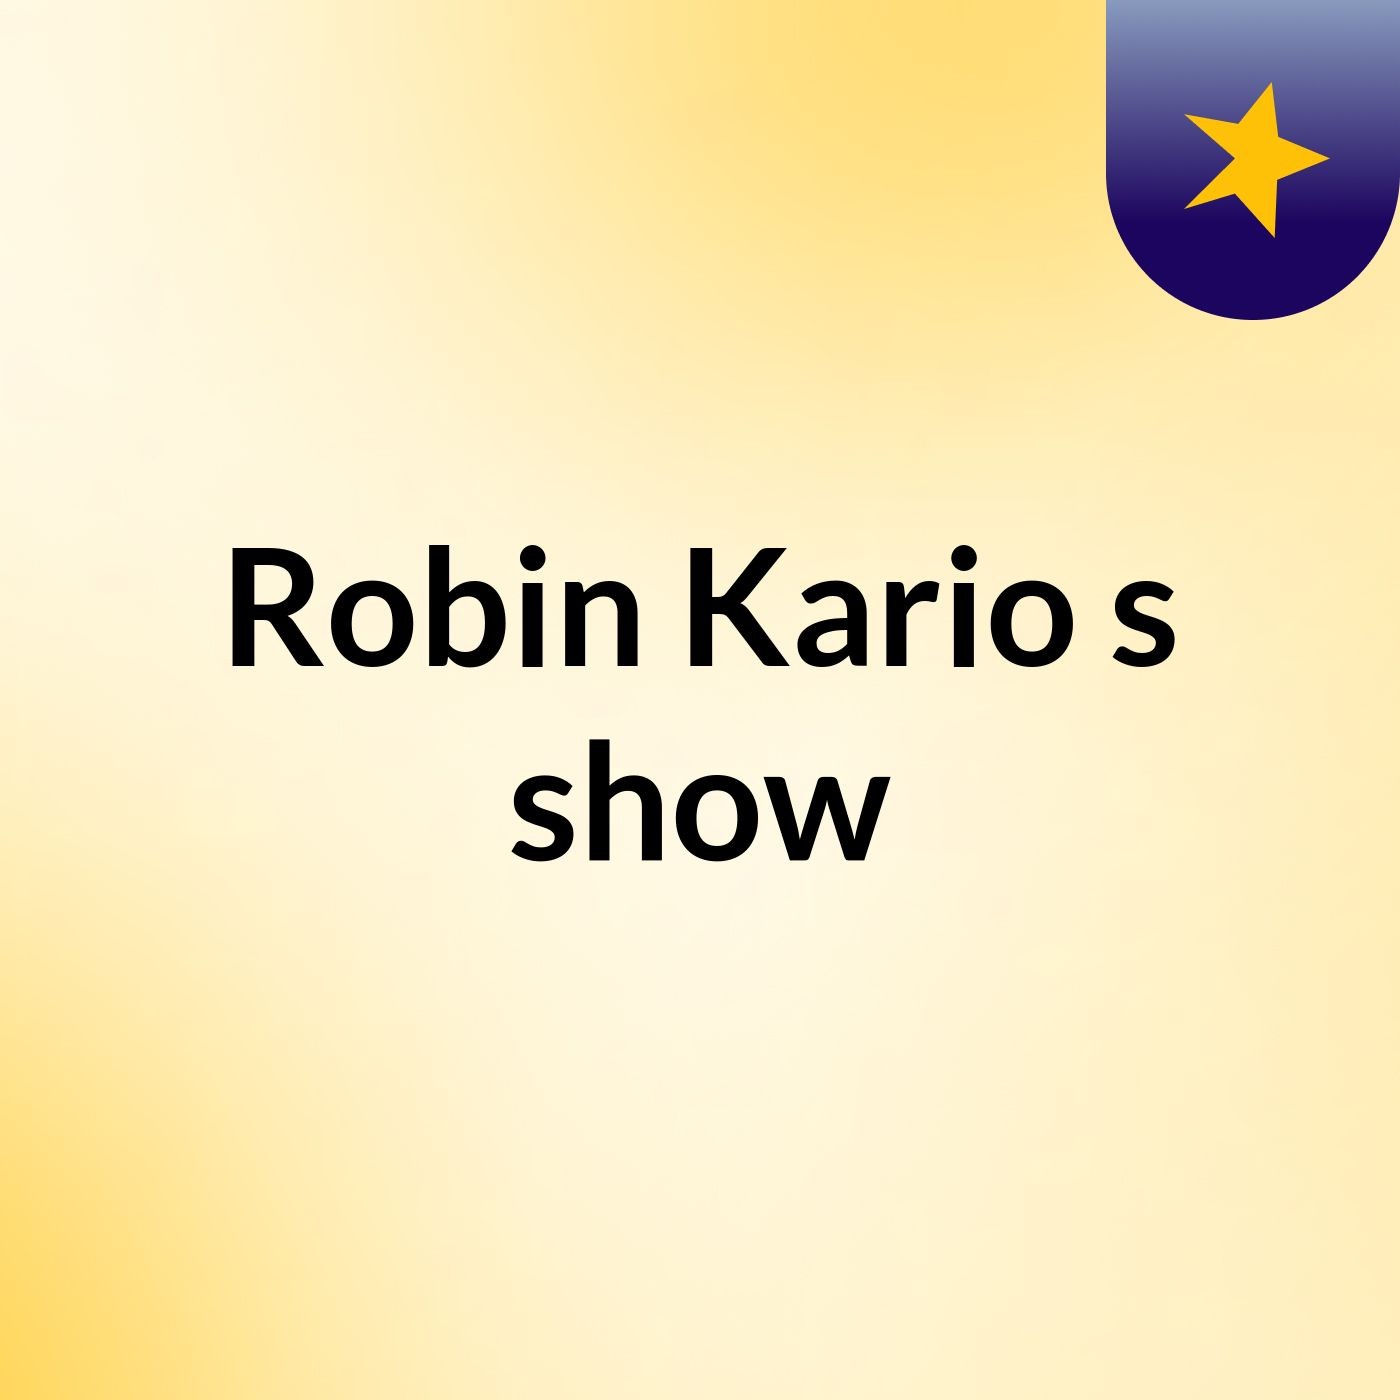 Episode 6 - Robin Kario's show